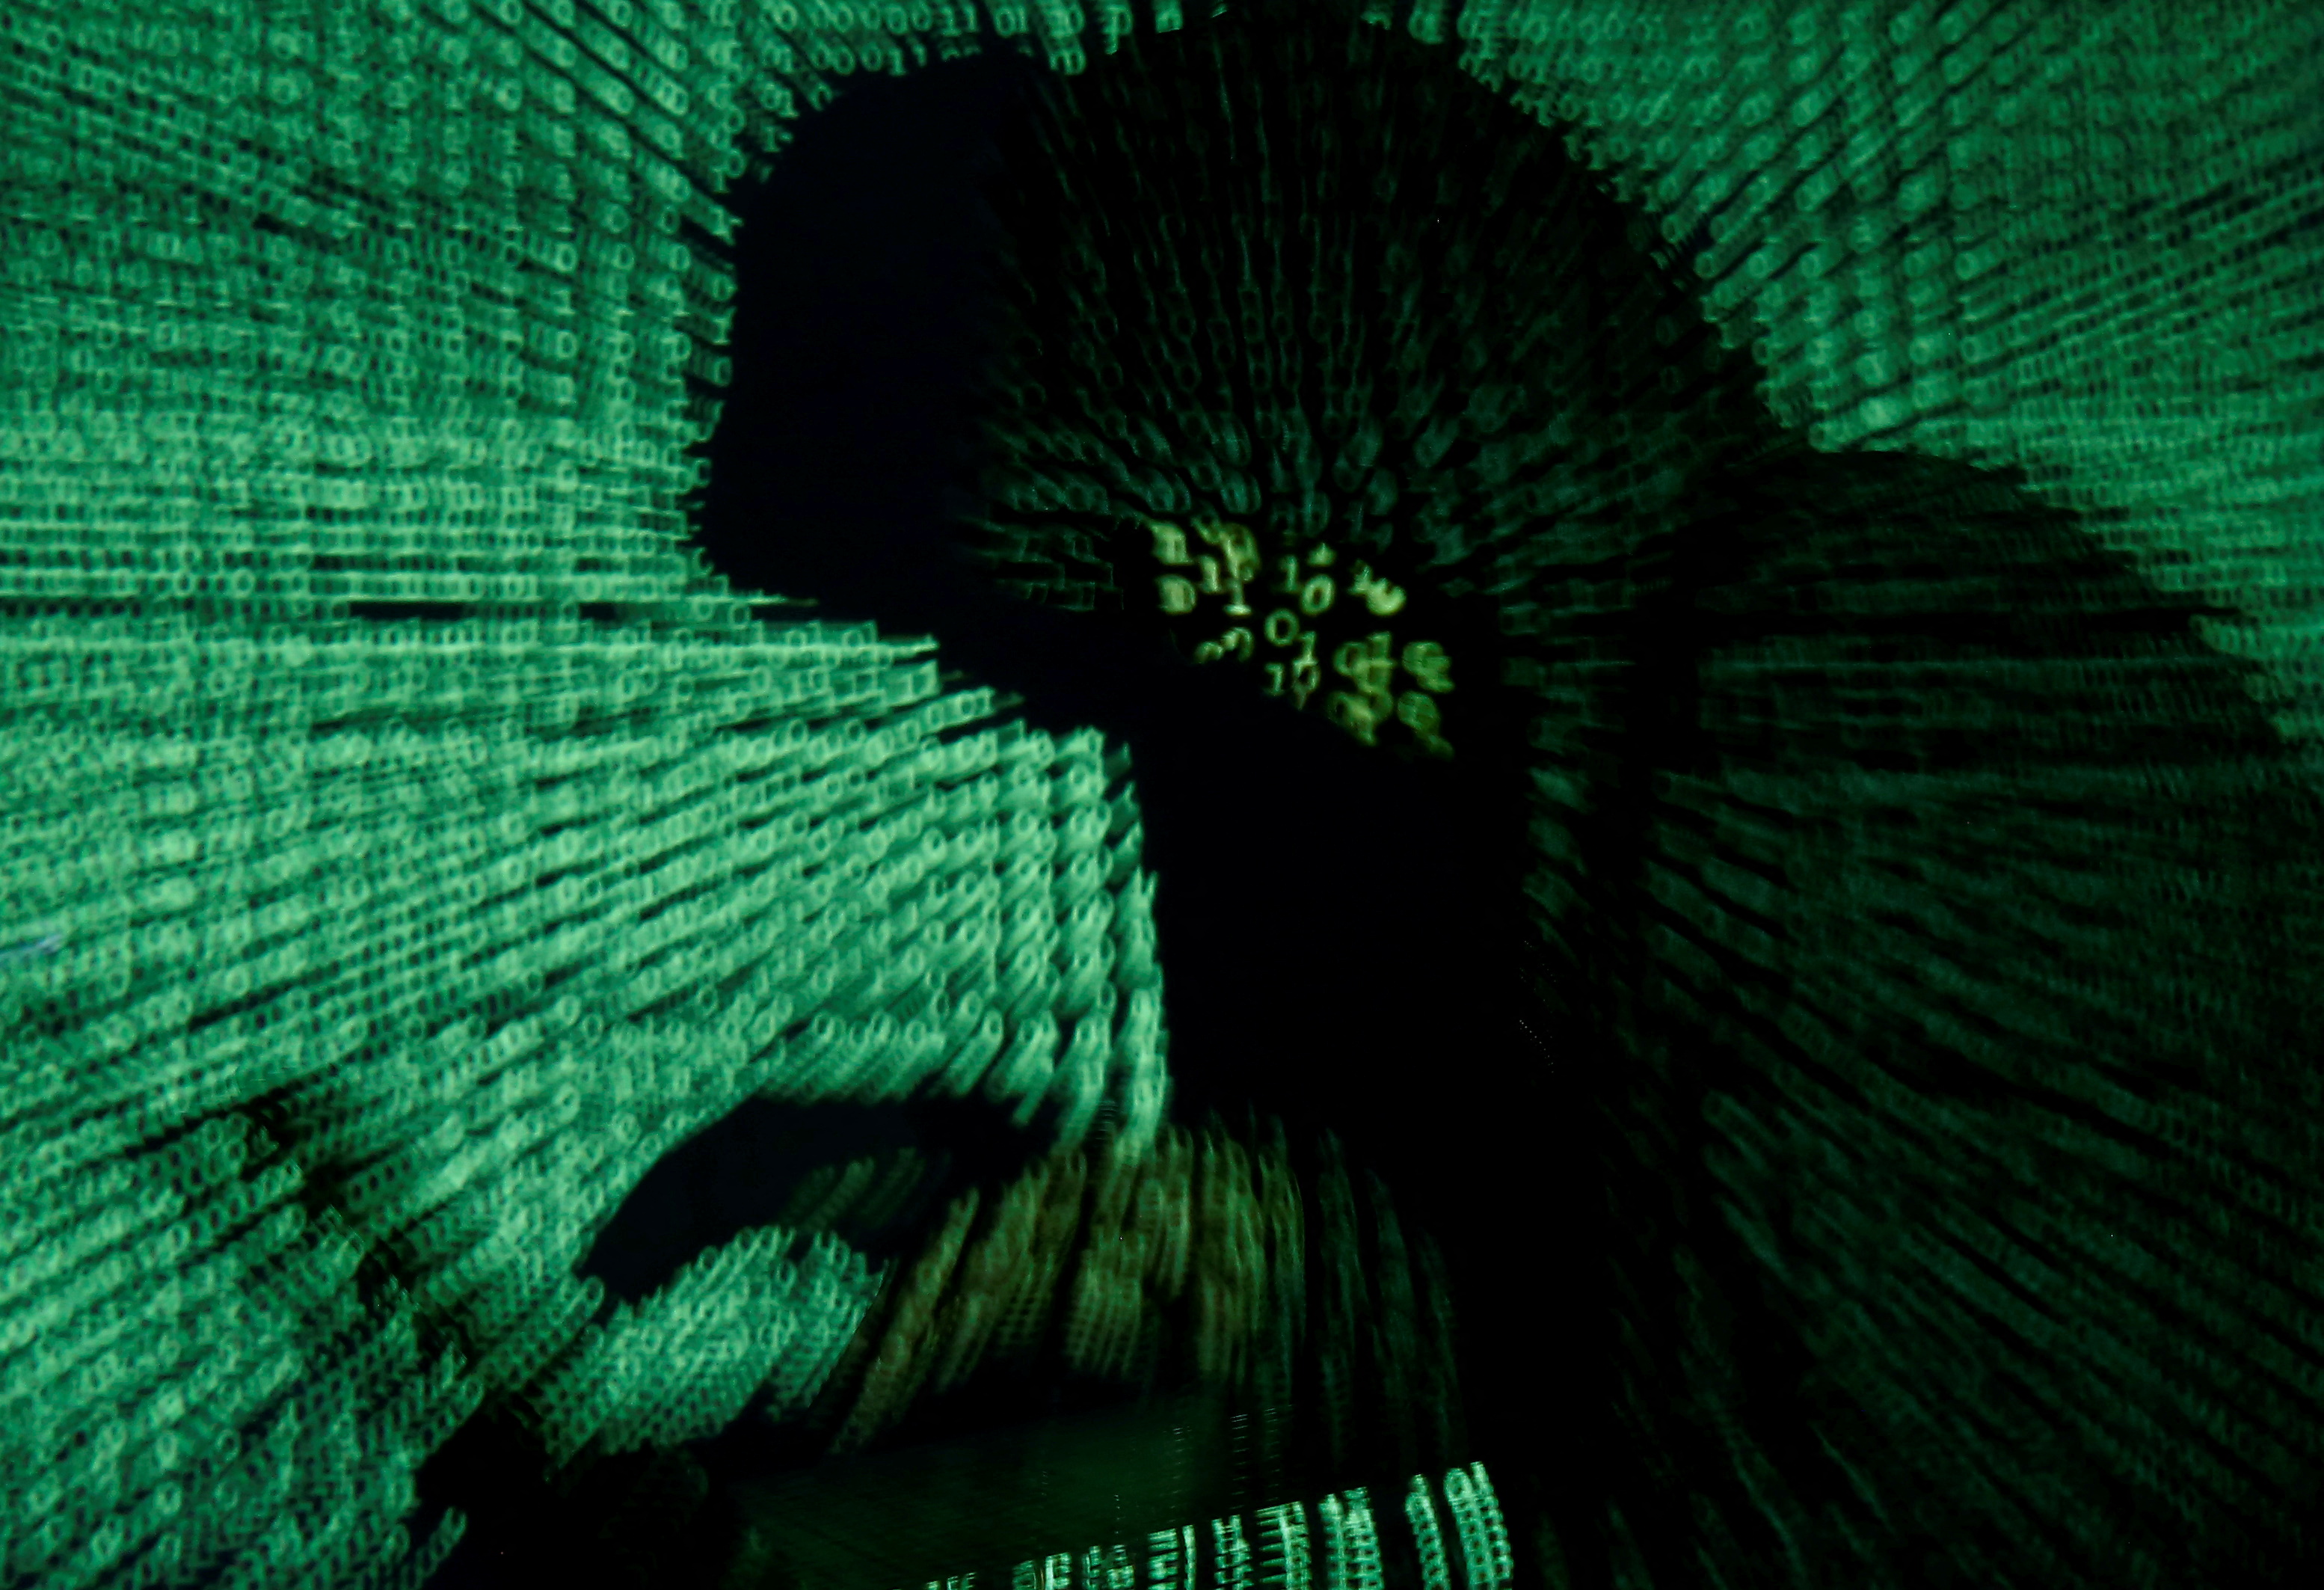 Un groupe de hackers affirme avoir mis la main sur les données de 560 millions clients de la billetterie Ticketmaster